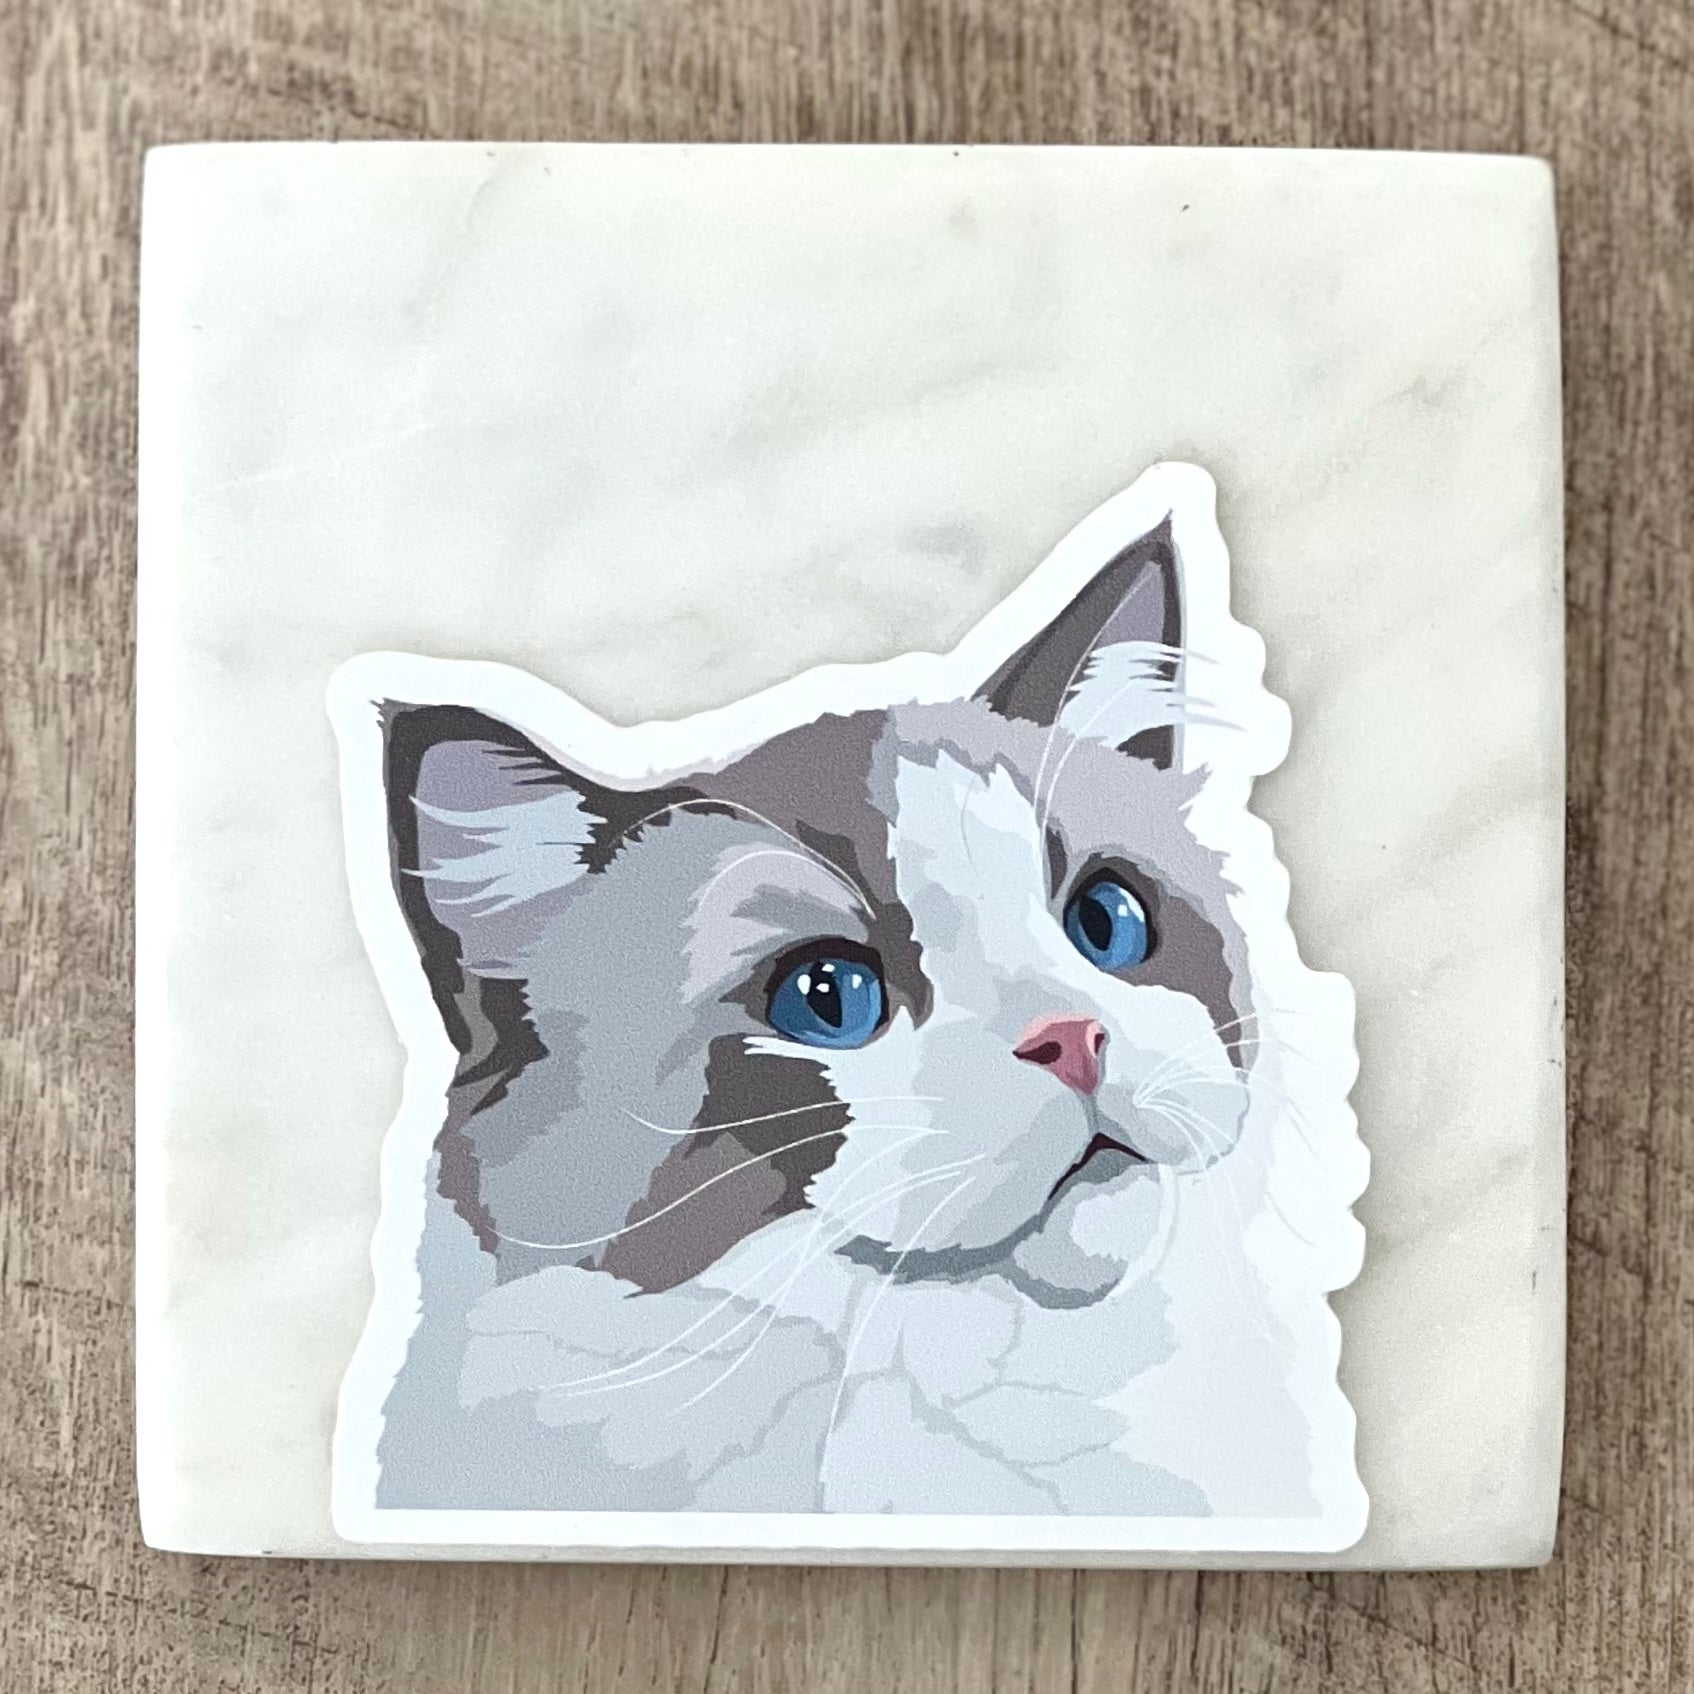 Rag cat sticker, 3", die cut, waterproof, vinyl